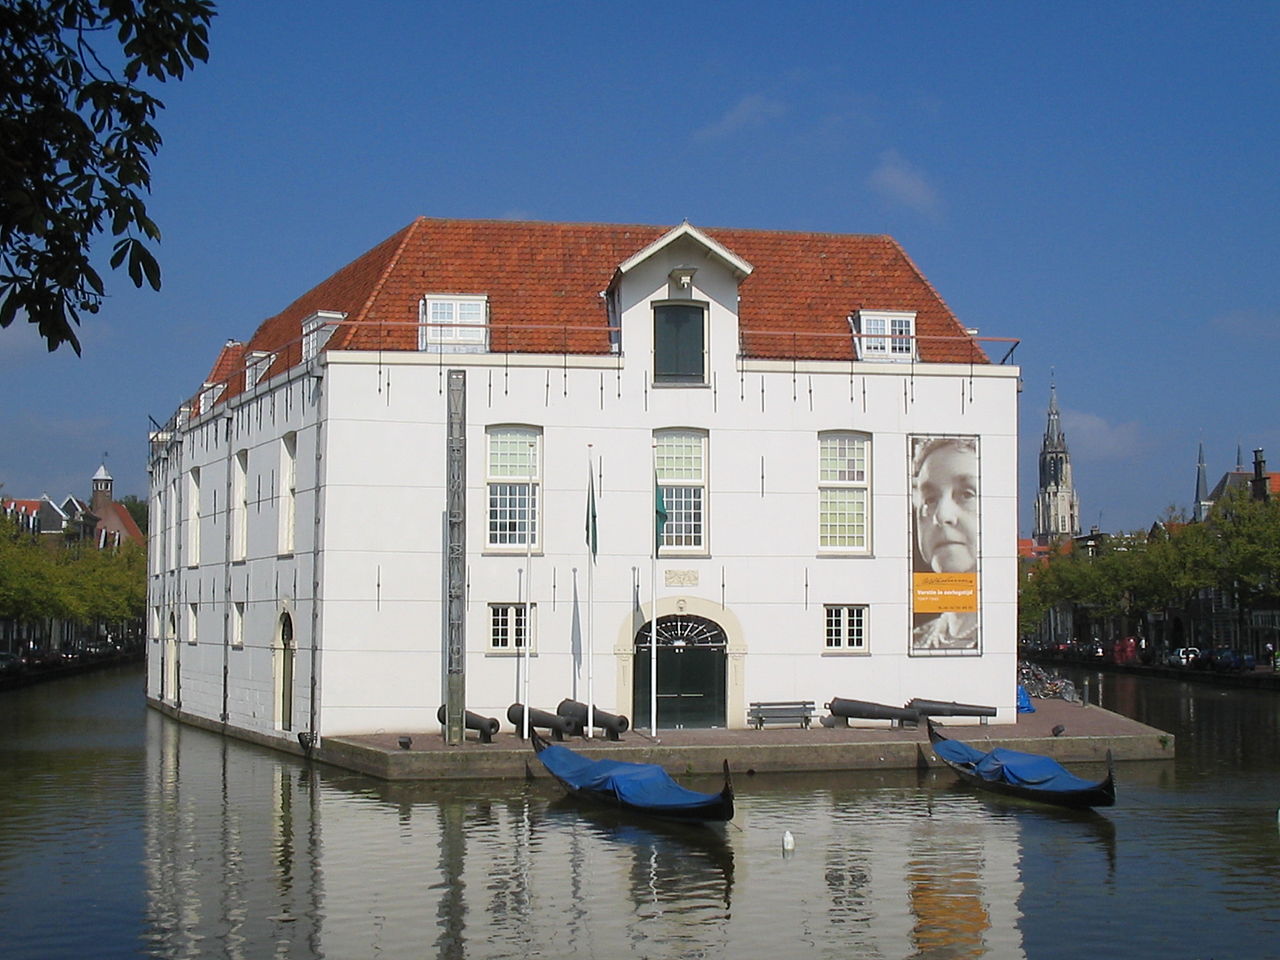 Armentarium in Delft - cc